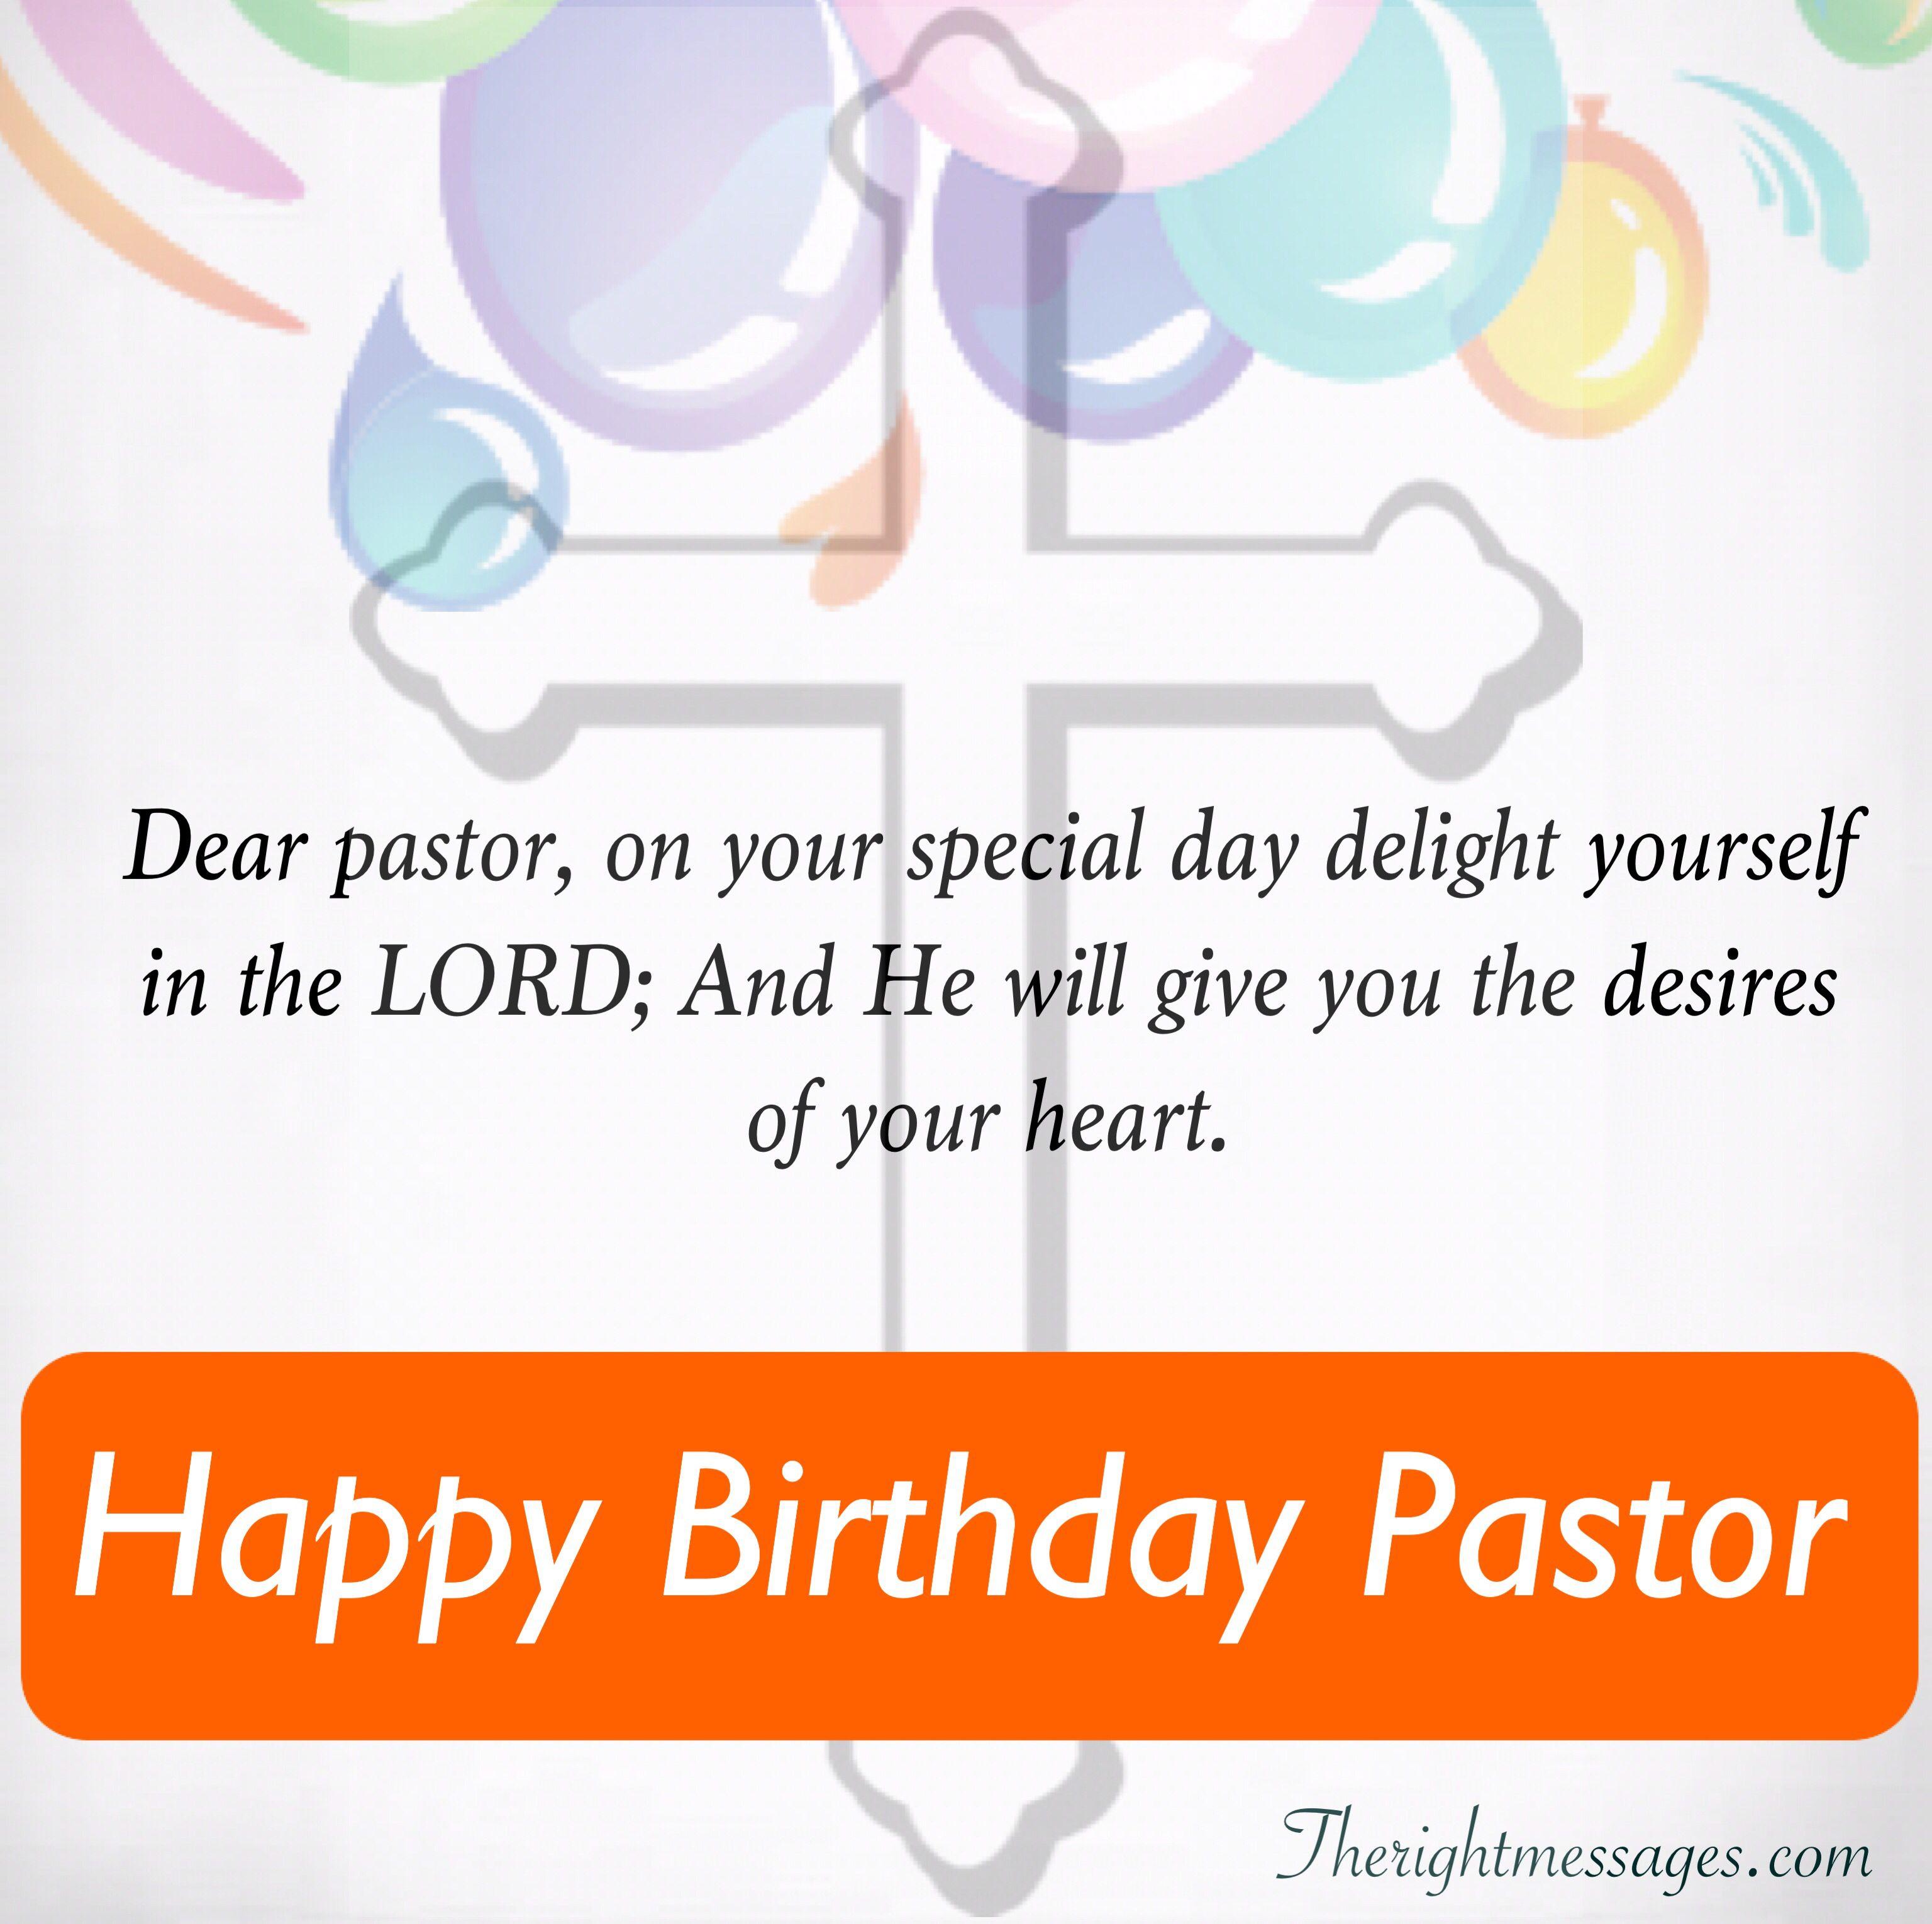 Happy Birthday Wishes For Pastor: Inspiring, Funny & Poem. Birthday